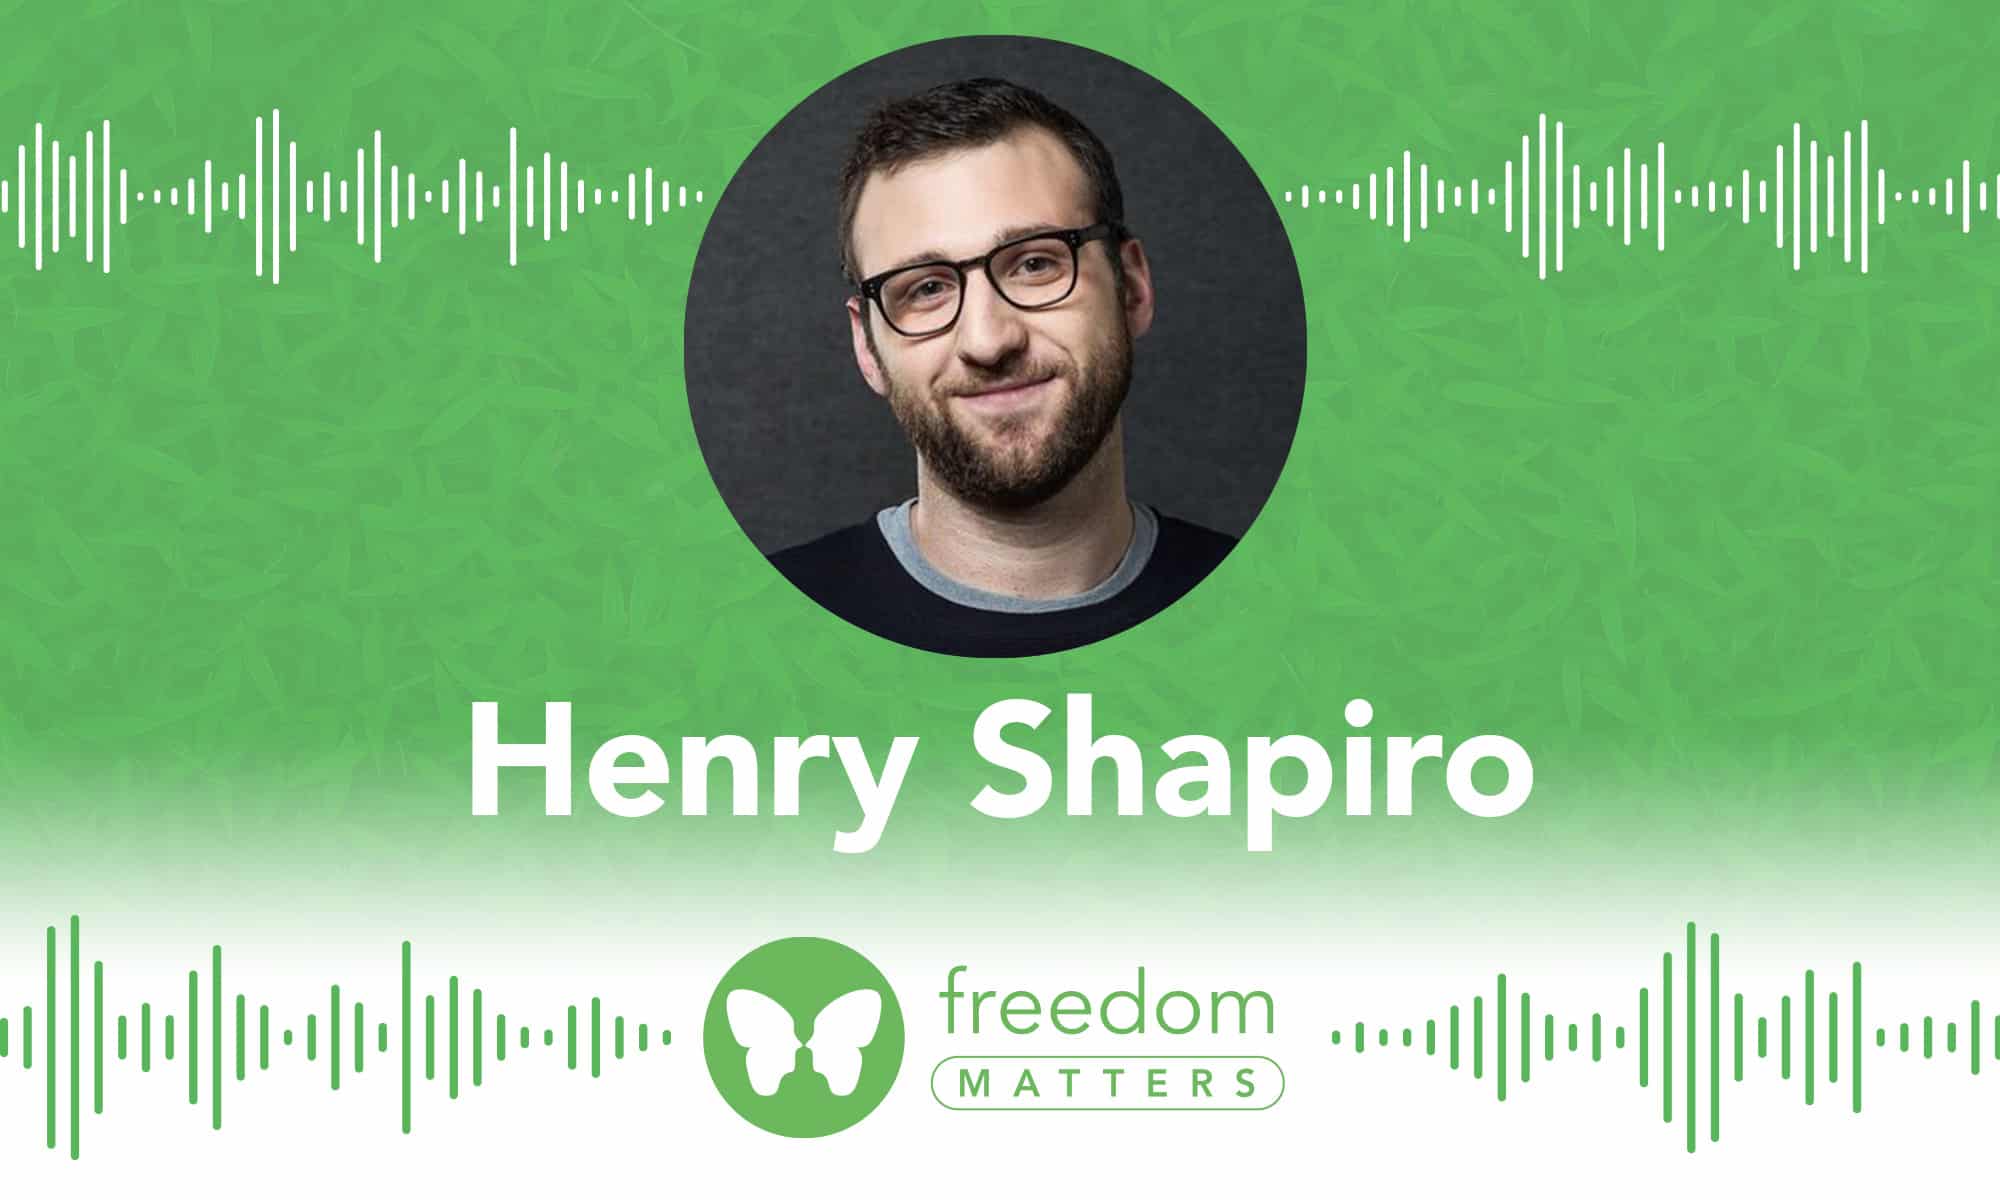 Henry Shapiro Freedom Matters